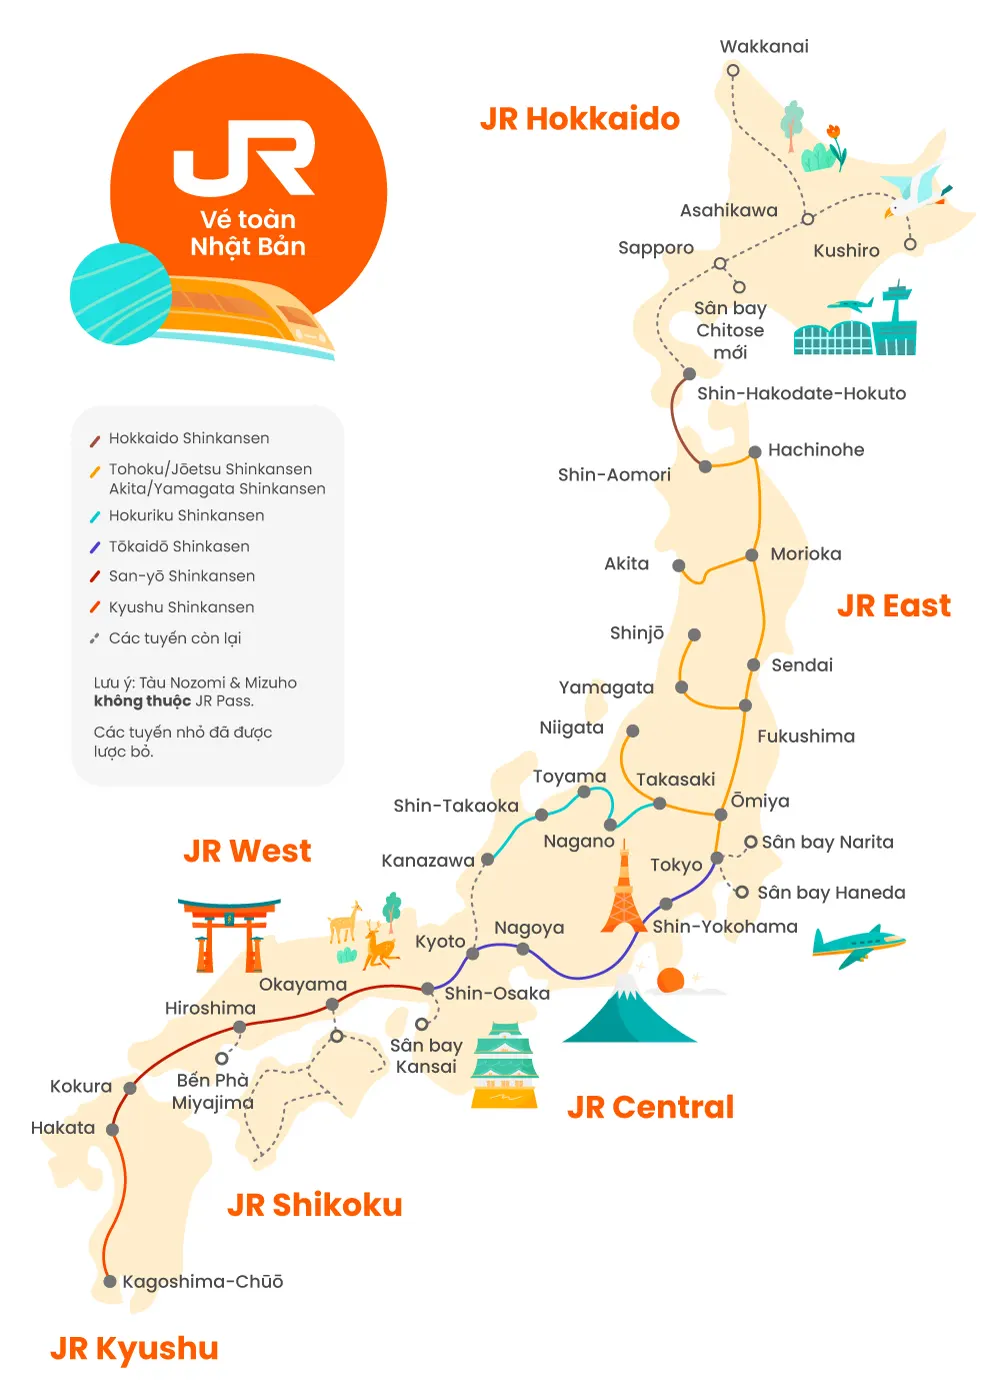 Đặt vé Japan Rail Pass trực tuyến trên TsukuViet để tiết kiệm thời gian và tiền bạc. Tiện lợi hơn bao giờ hết với việc đặt vé qua mạng, bạn có thể sắp xếp lịch trình của mình một cách dễ dàng và linh hoạt. Hãy đặt vé ngay để chuẩn bị cho kỳ nghỉ tuyệt vời tại Nhật Bản.